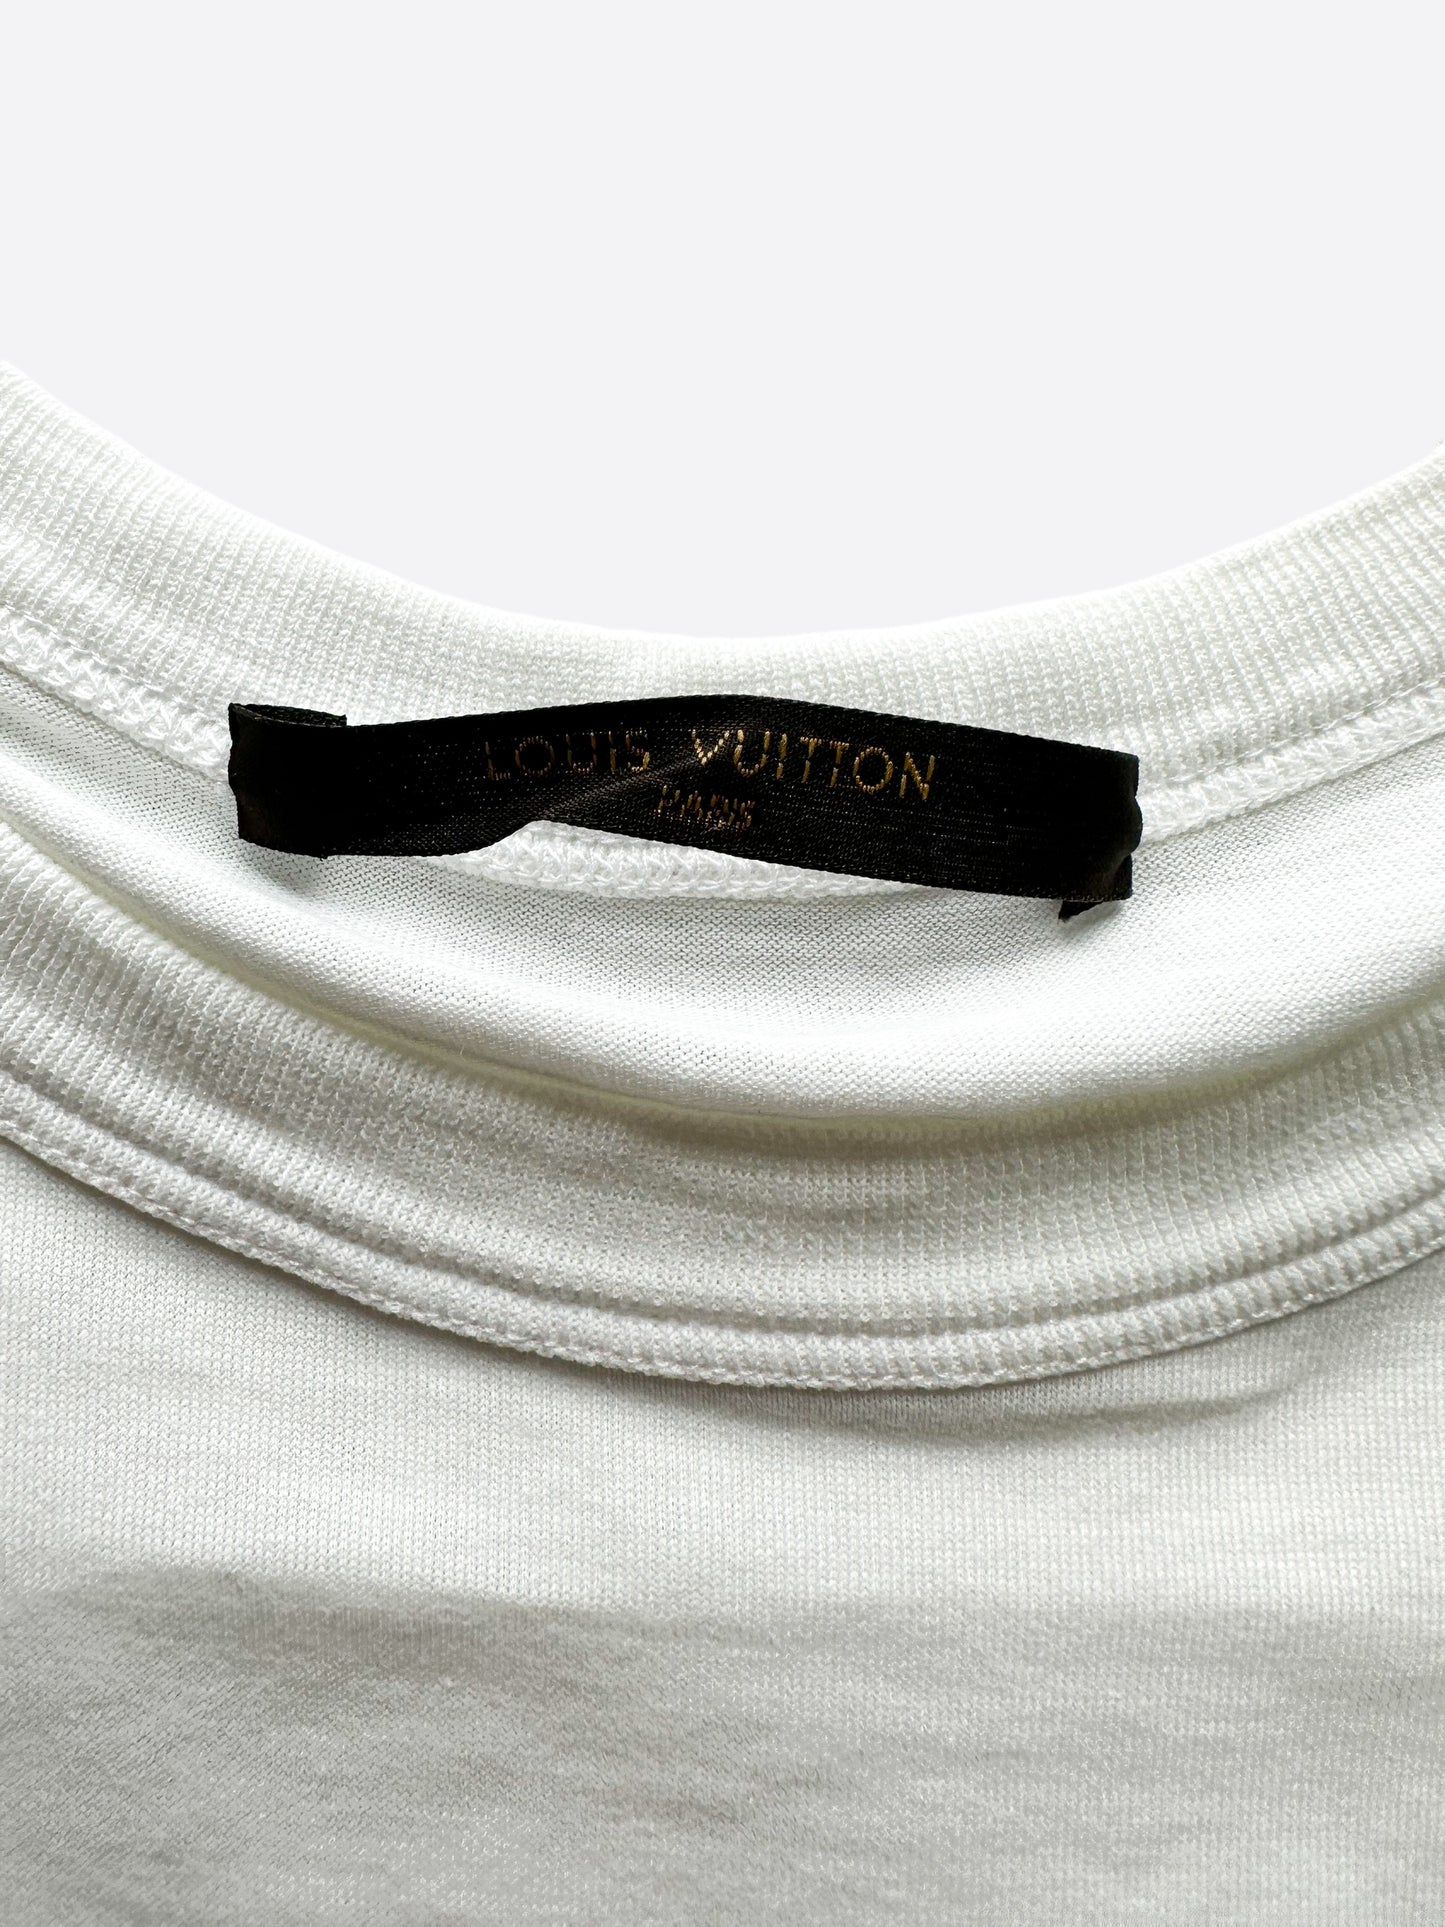 Louis Vuitton Supreme 2017 Box Logo T-Shirt